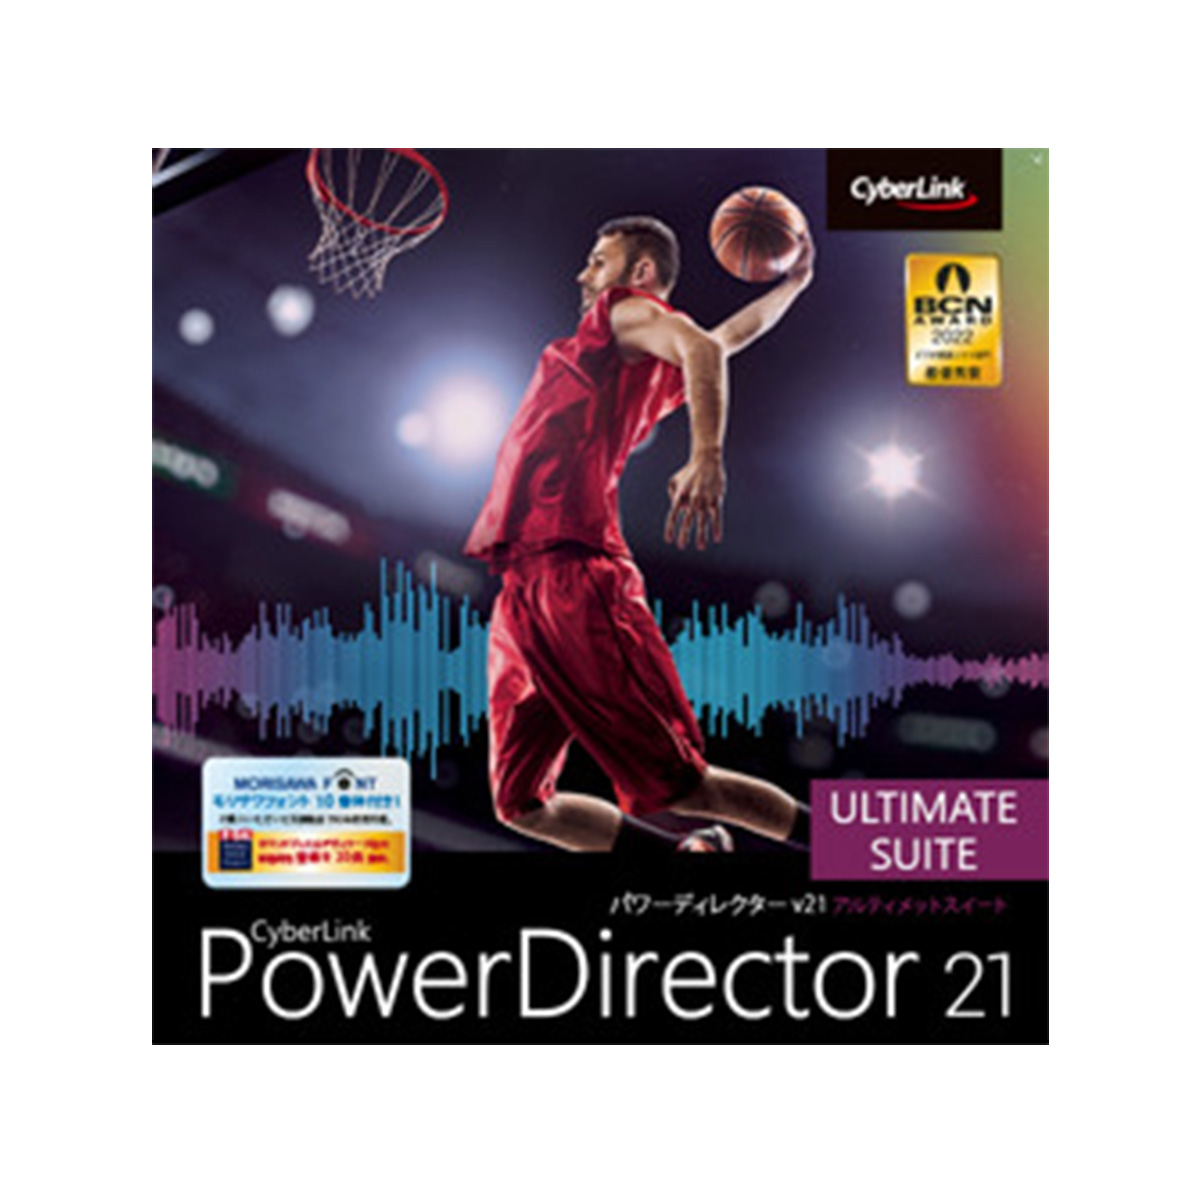 PowerDirector 21 Ultimate Suite ダウンロード版